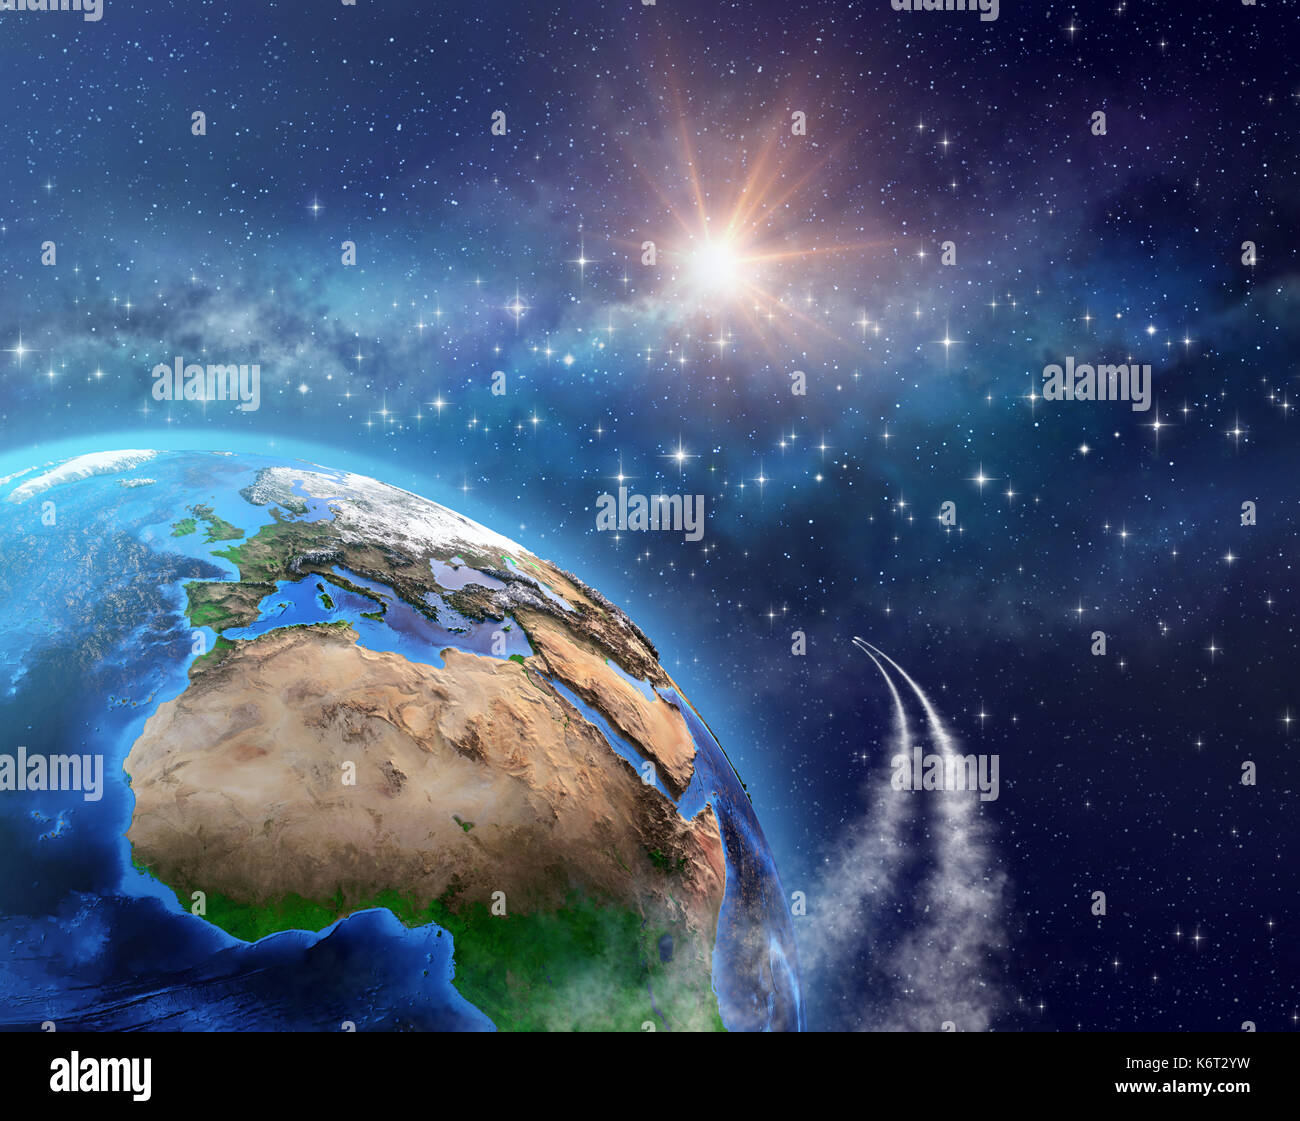 Las naves espaciales o satélites en órbita alrededor de la tierra, la luz del sol brillando en el espacio profundo detrás de los elementos de esta imagen proporcionada por la NASA - illustratio 3d Foto de stock